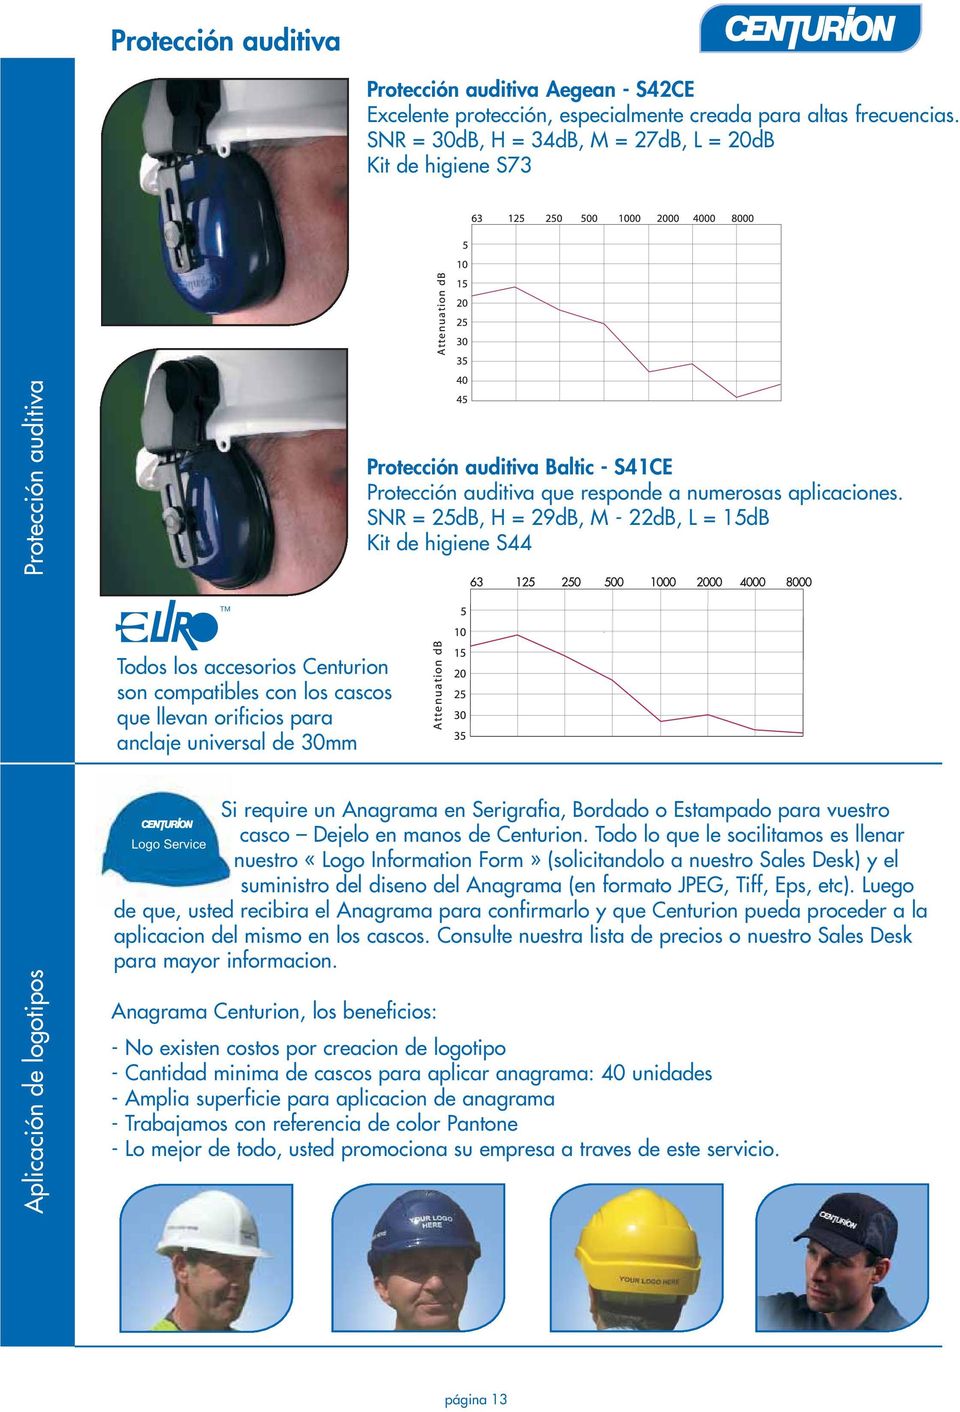 universal de 30mm Protección auditiva Baltic - S41CE Protección auditiva que responde a numerosas aplicaciones.